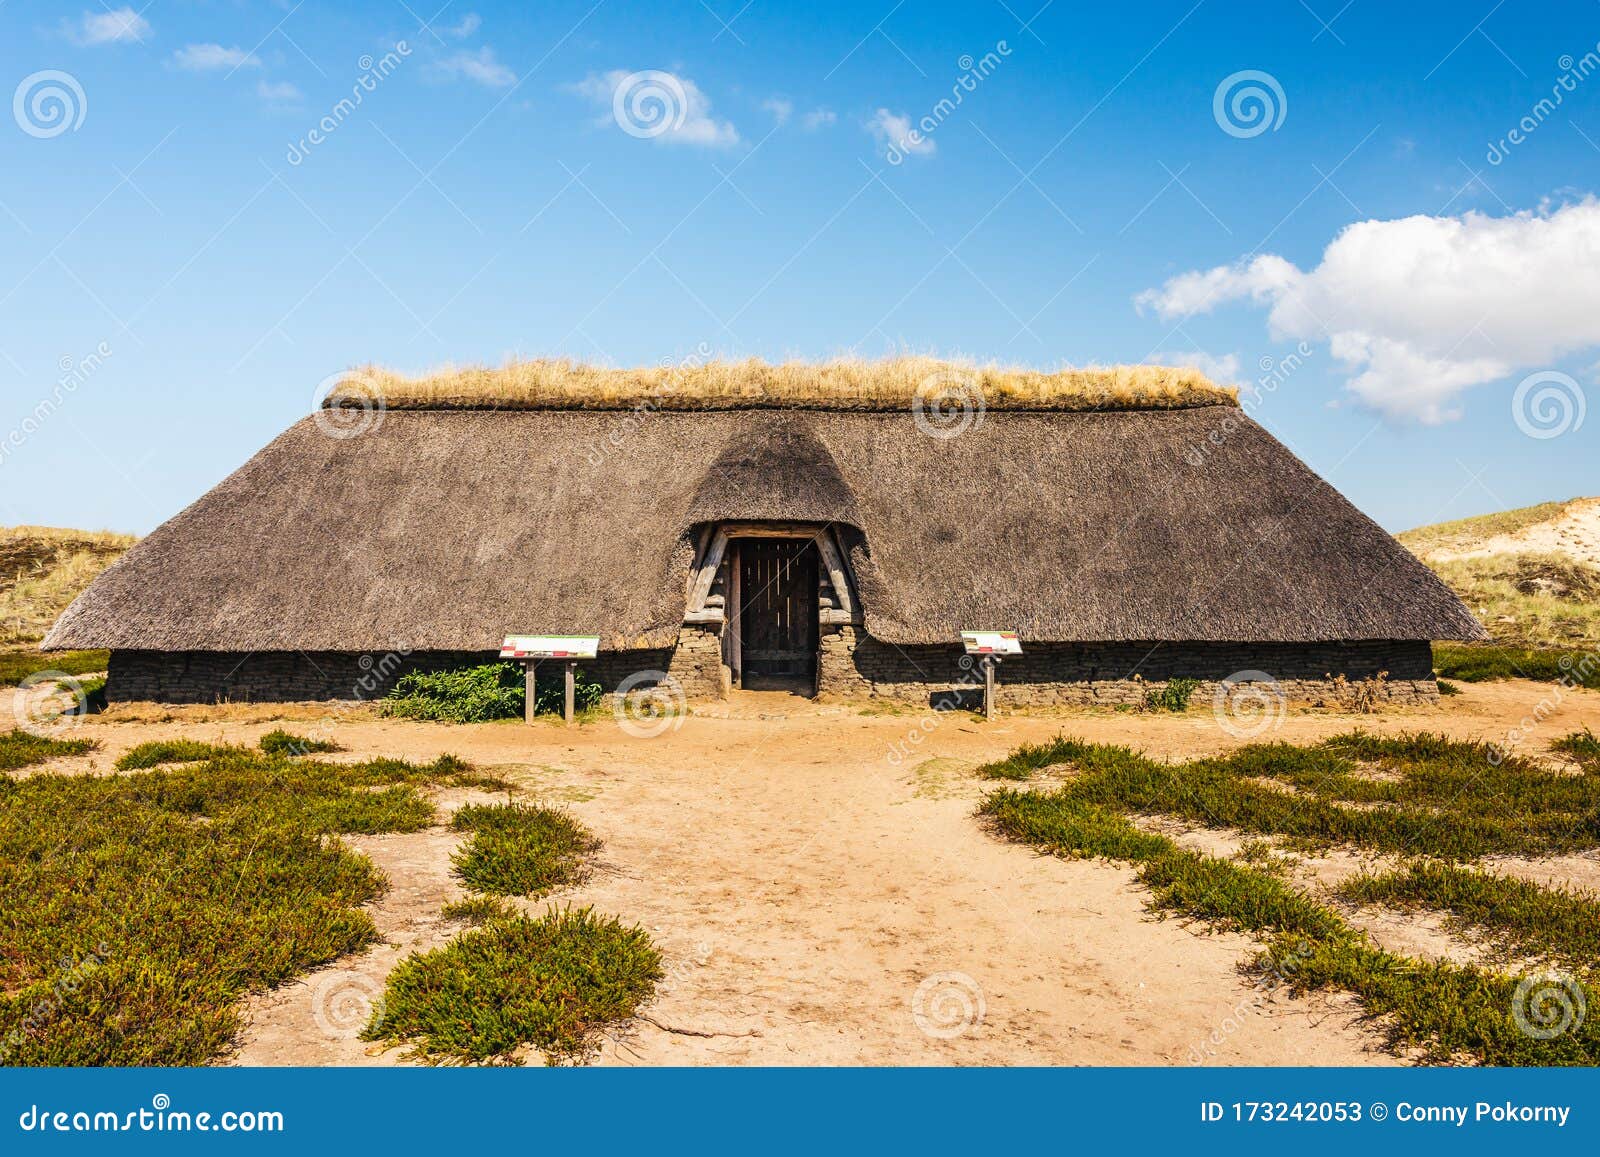 reconstructed-iron-age-house-dunes-amrum